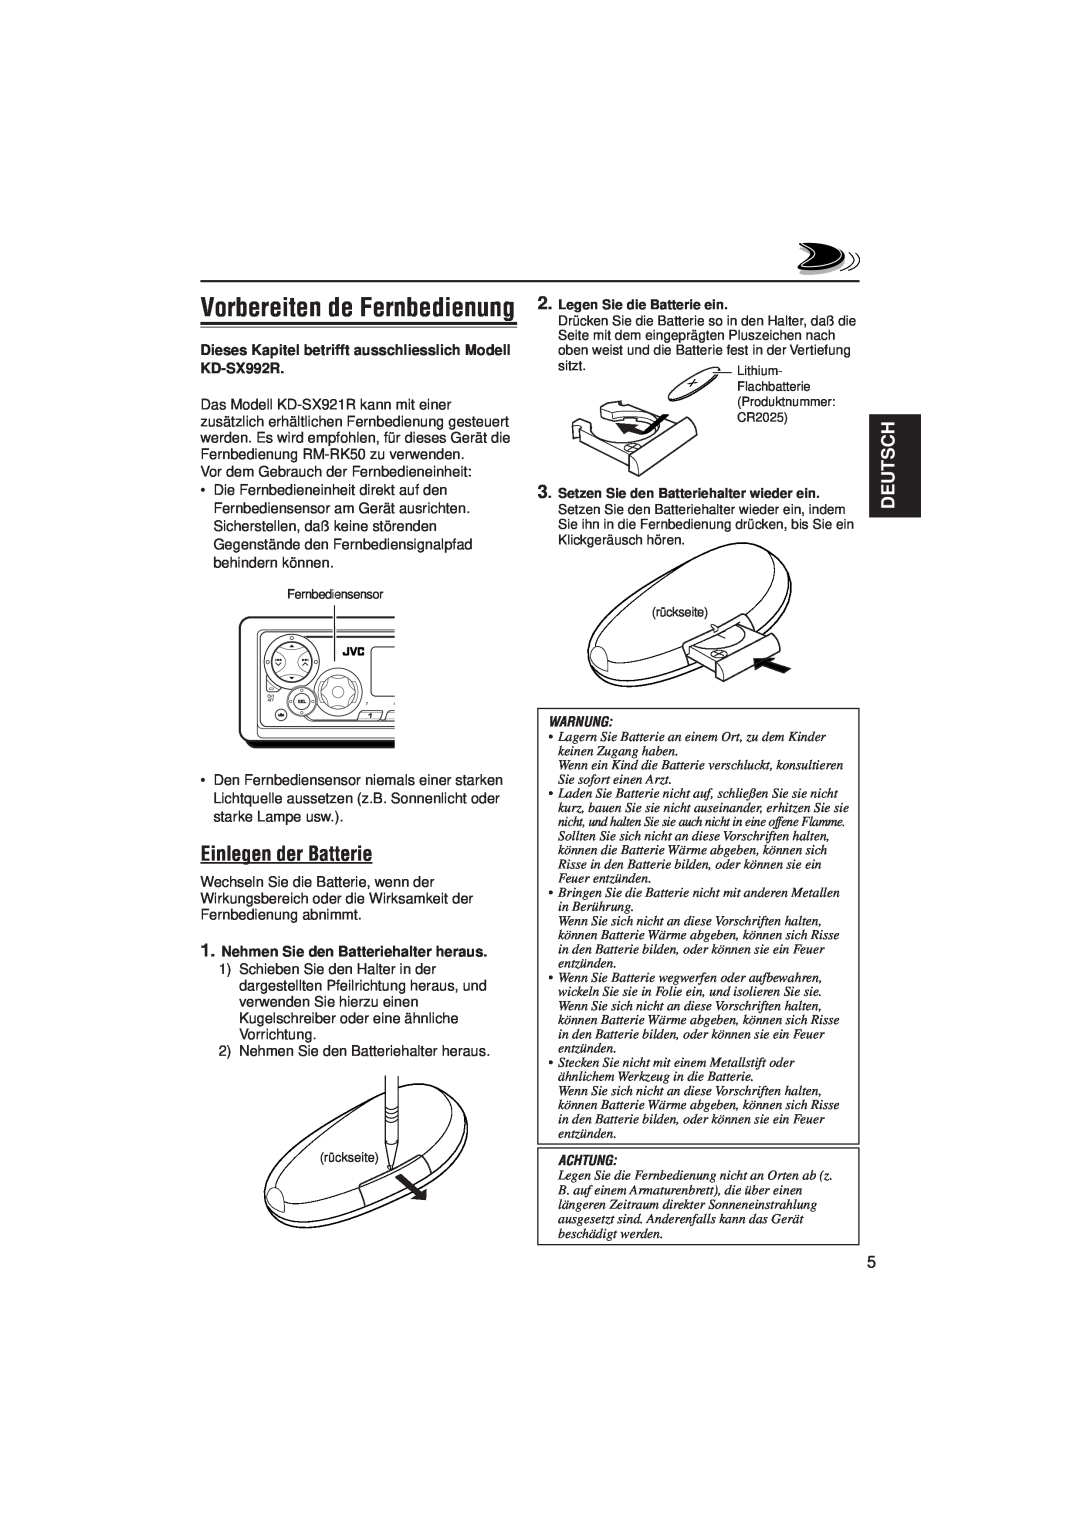 JVC KD-SX992R manual Vorbereiten de Fernbedienung, Einlegen der Batterie, Deutsch, Nehmen Sie den Batteriehalter heraus 